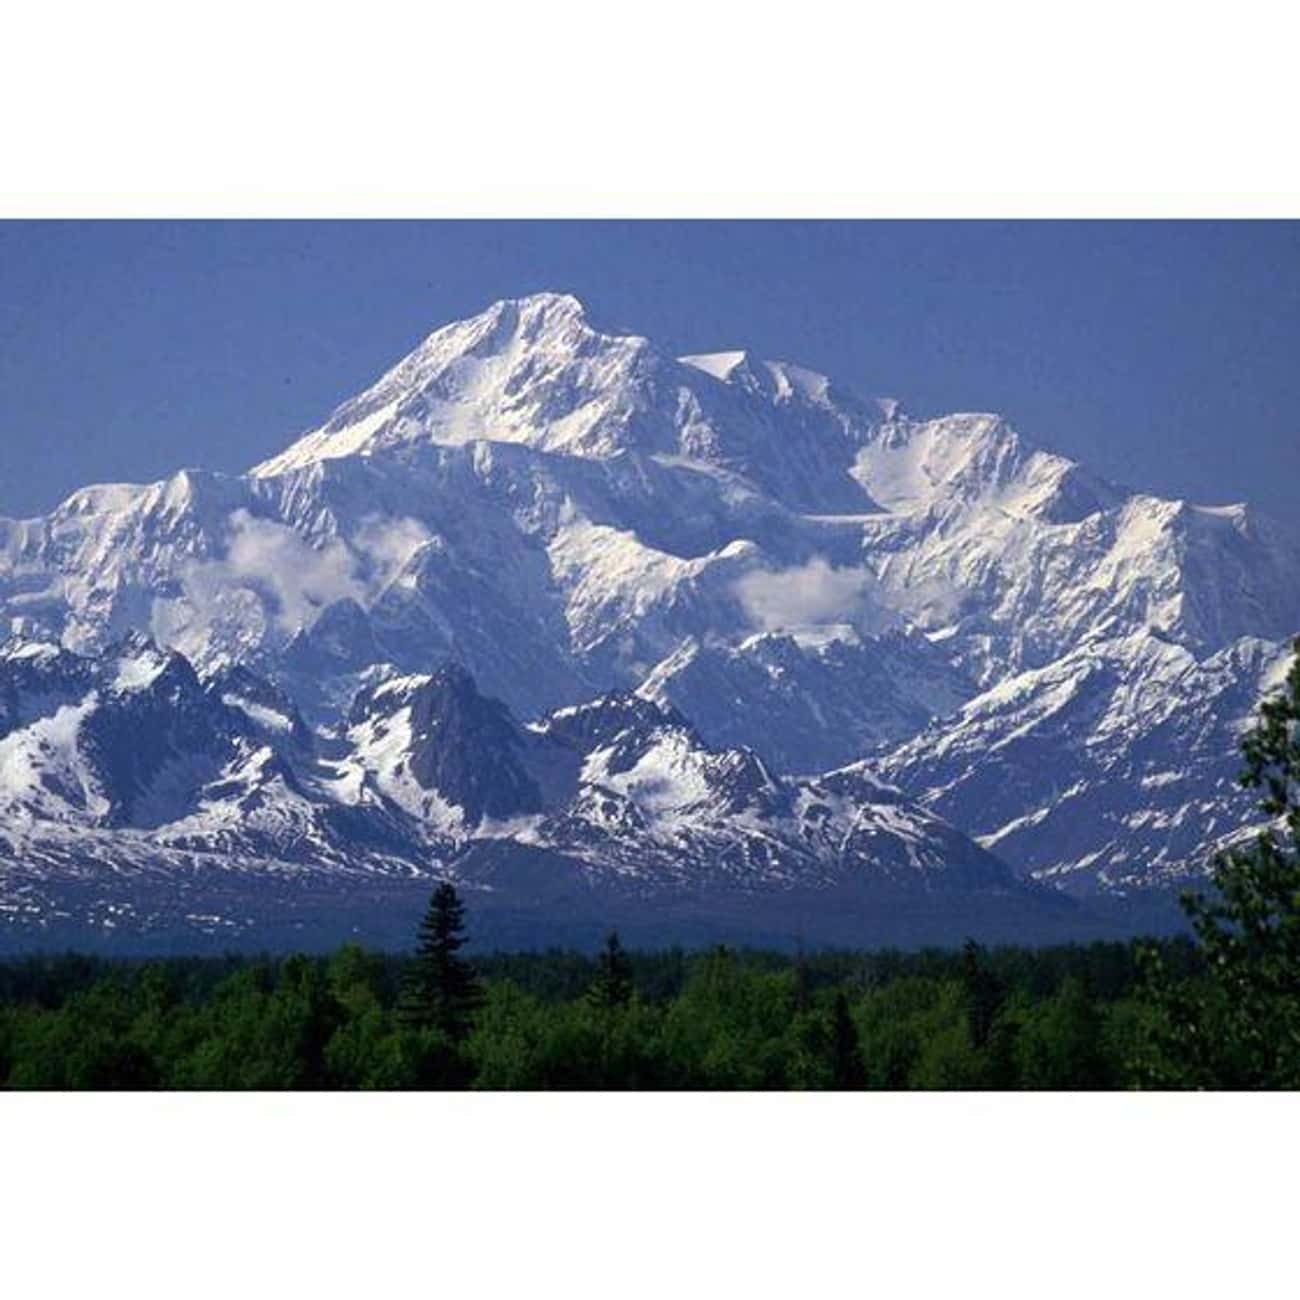 Denali (Mount McKinley) in Alaska Is as Wild as It Gets